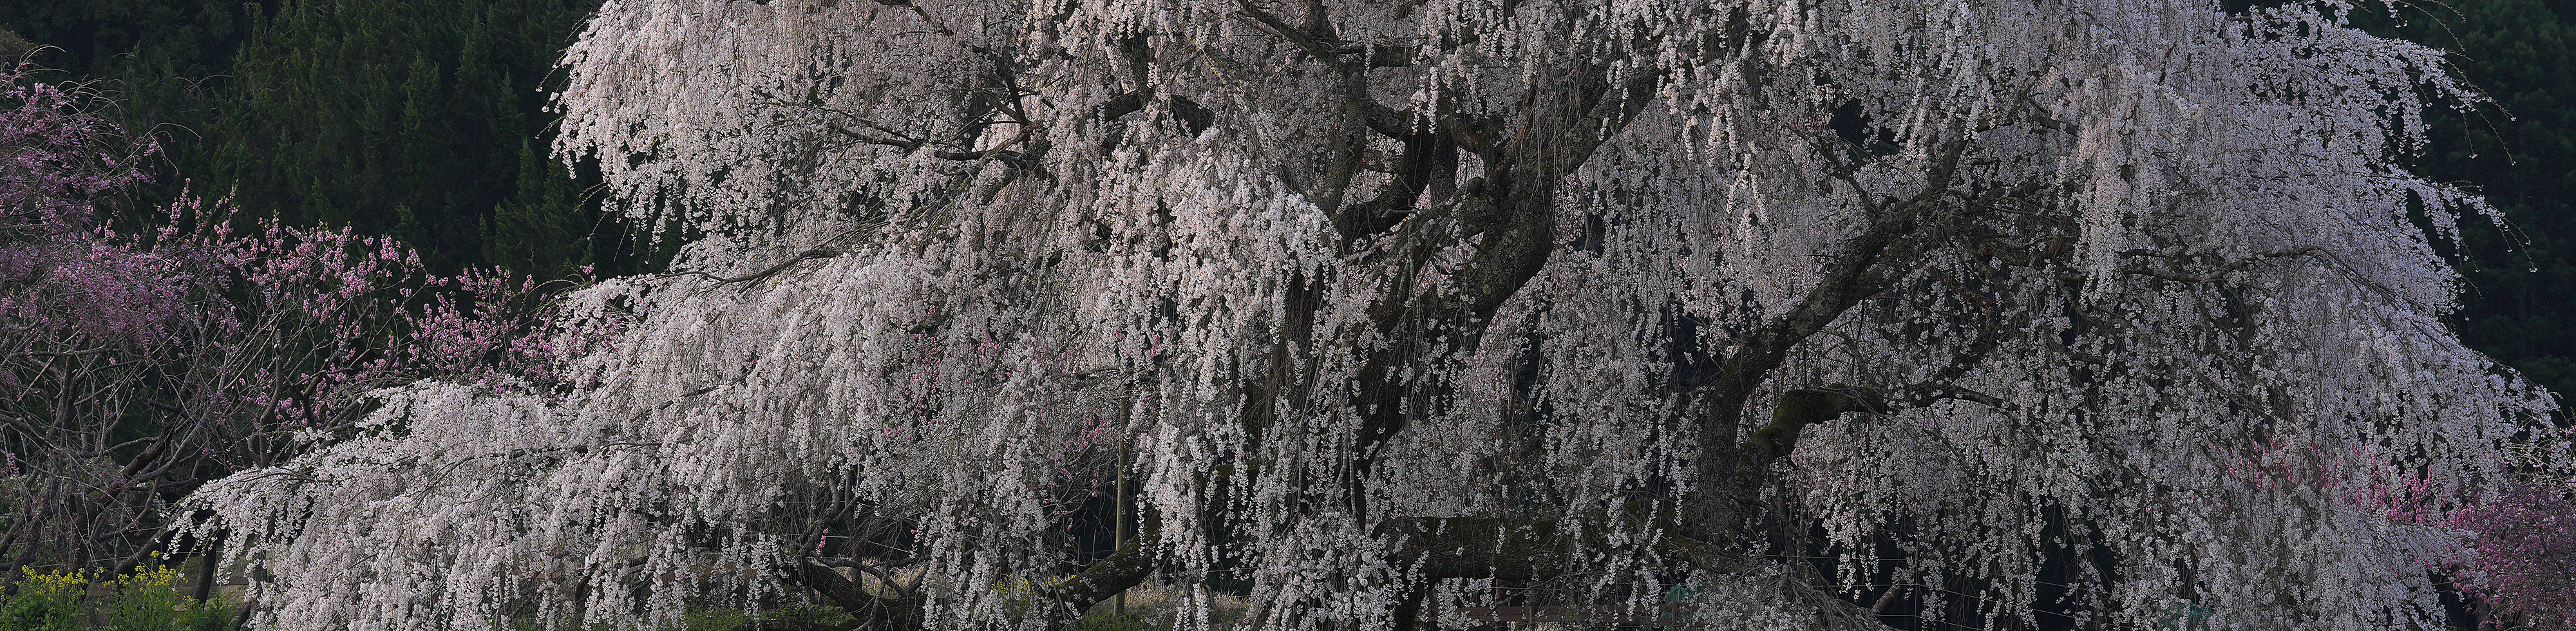 Snímek rozkvetlých třešní